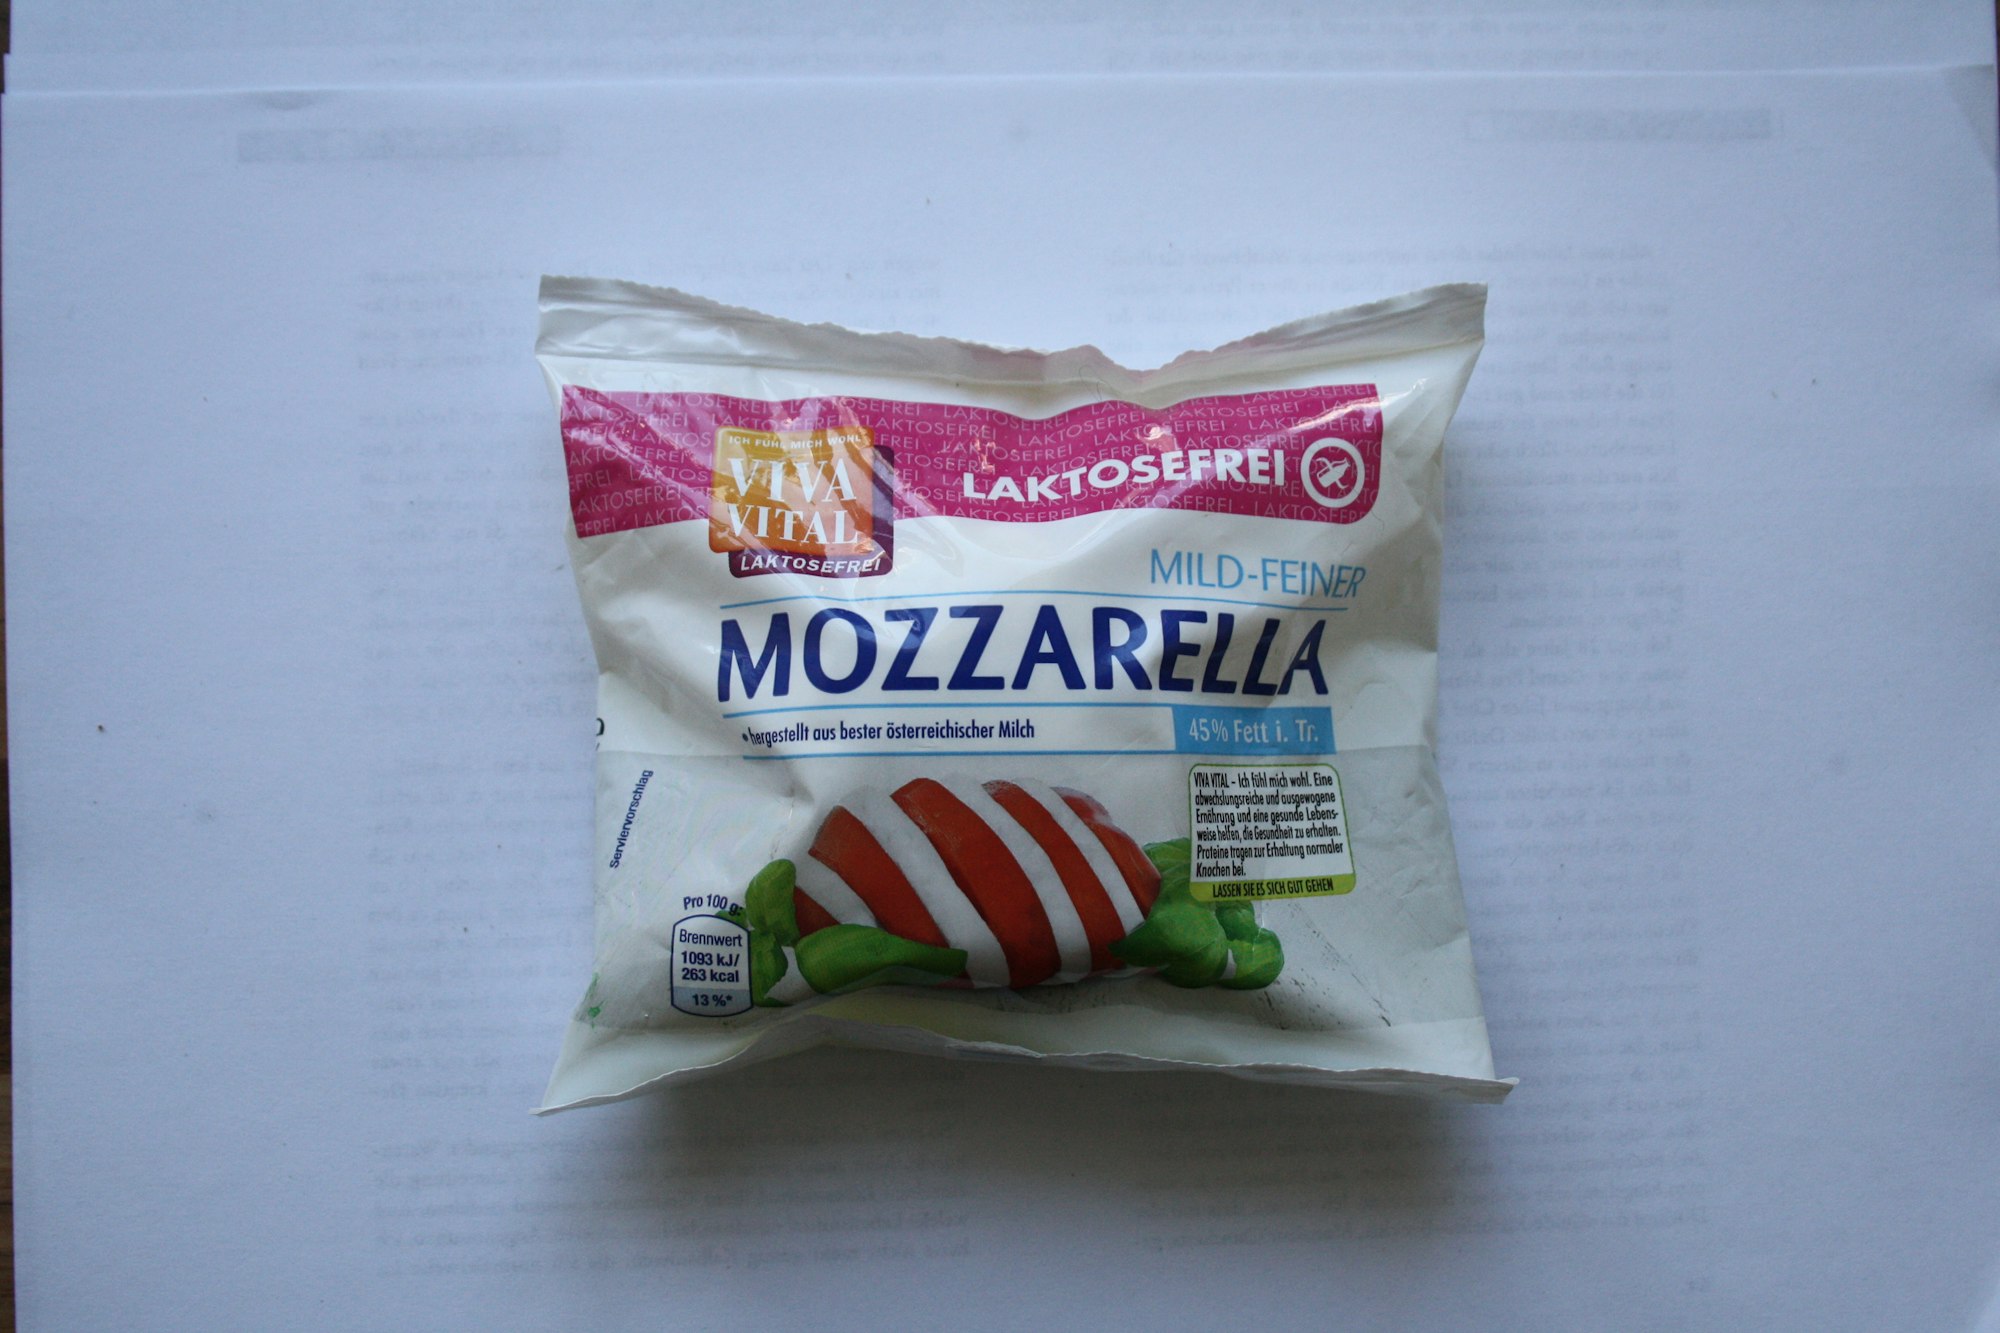 Viva Vital Mozzarella laktosefrei (1)